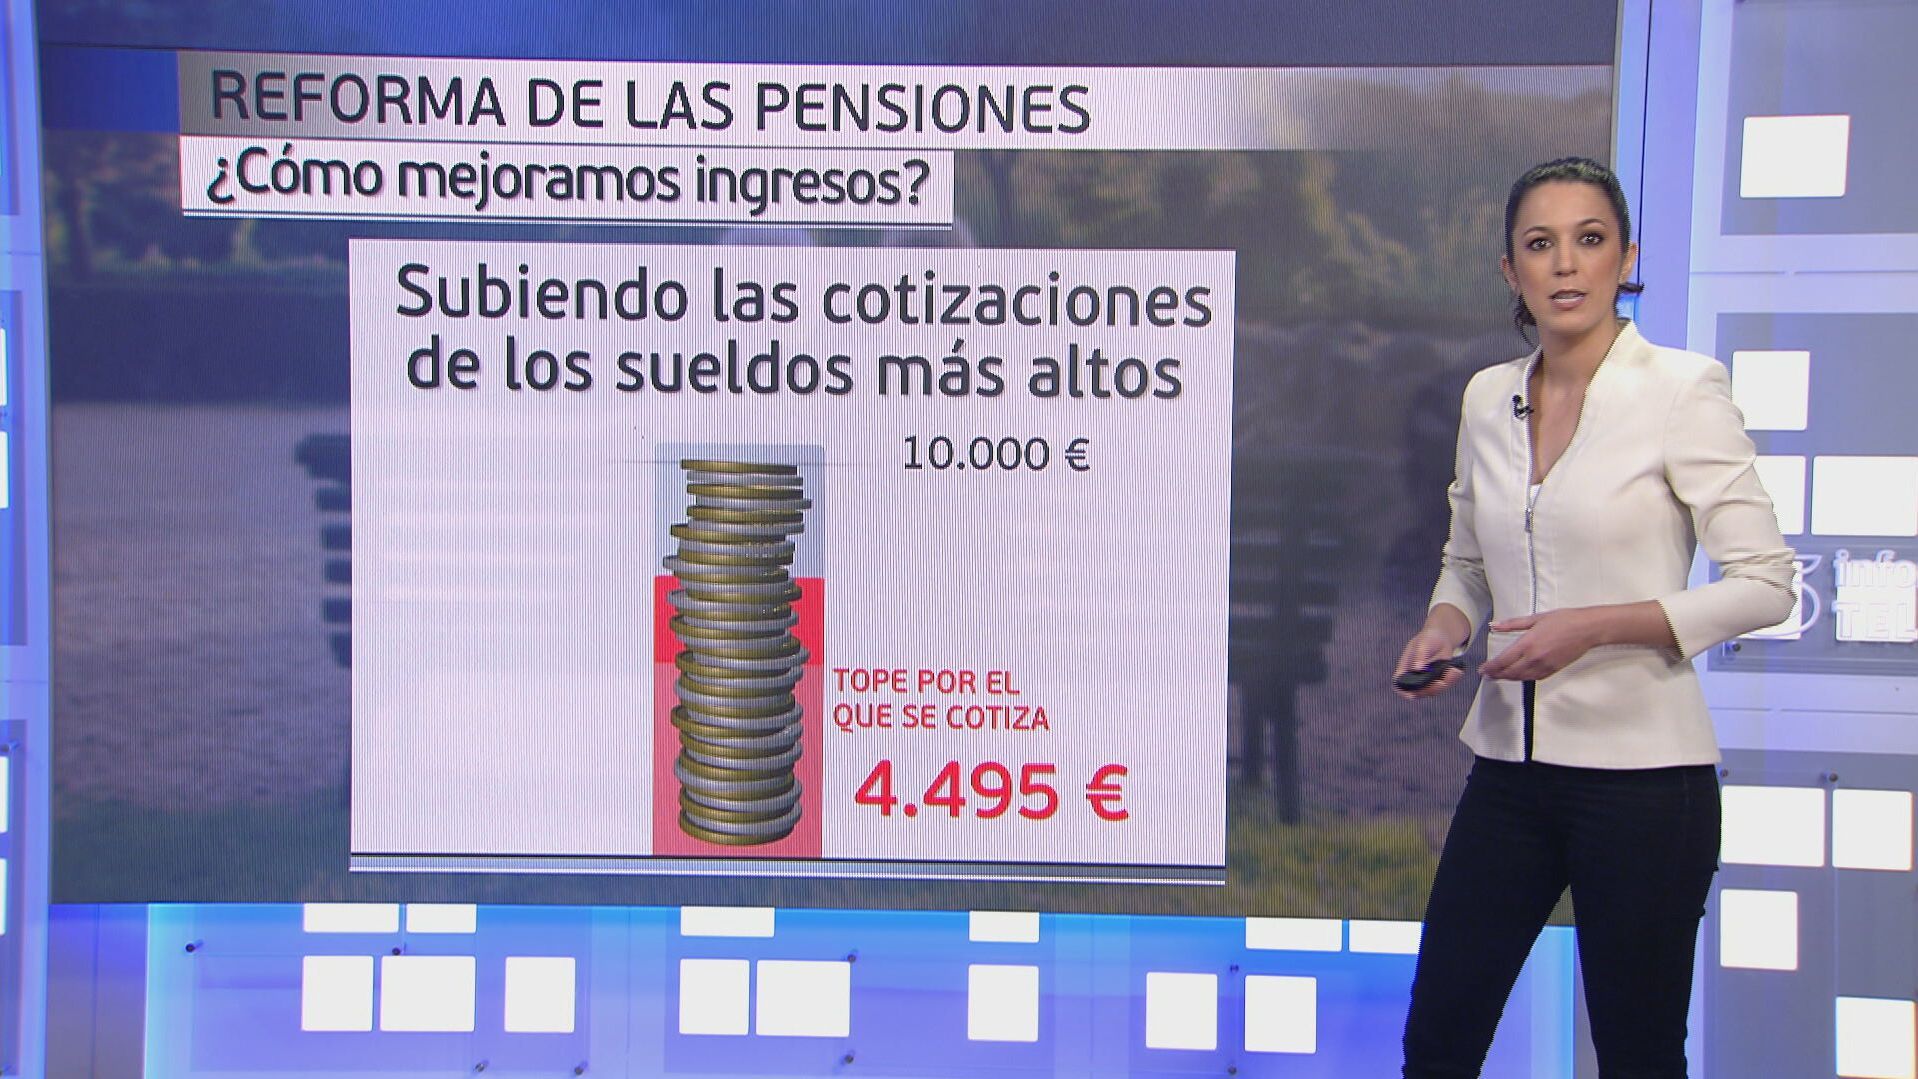 El panel de Beatriz Benayas: ¿cuándo entra en vigor reforma de las pensiones y por qué se hace?